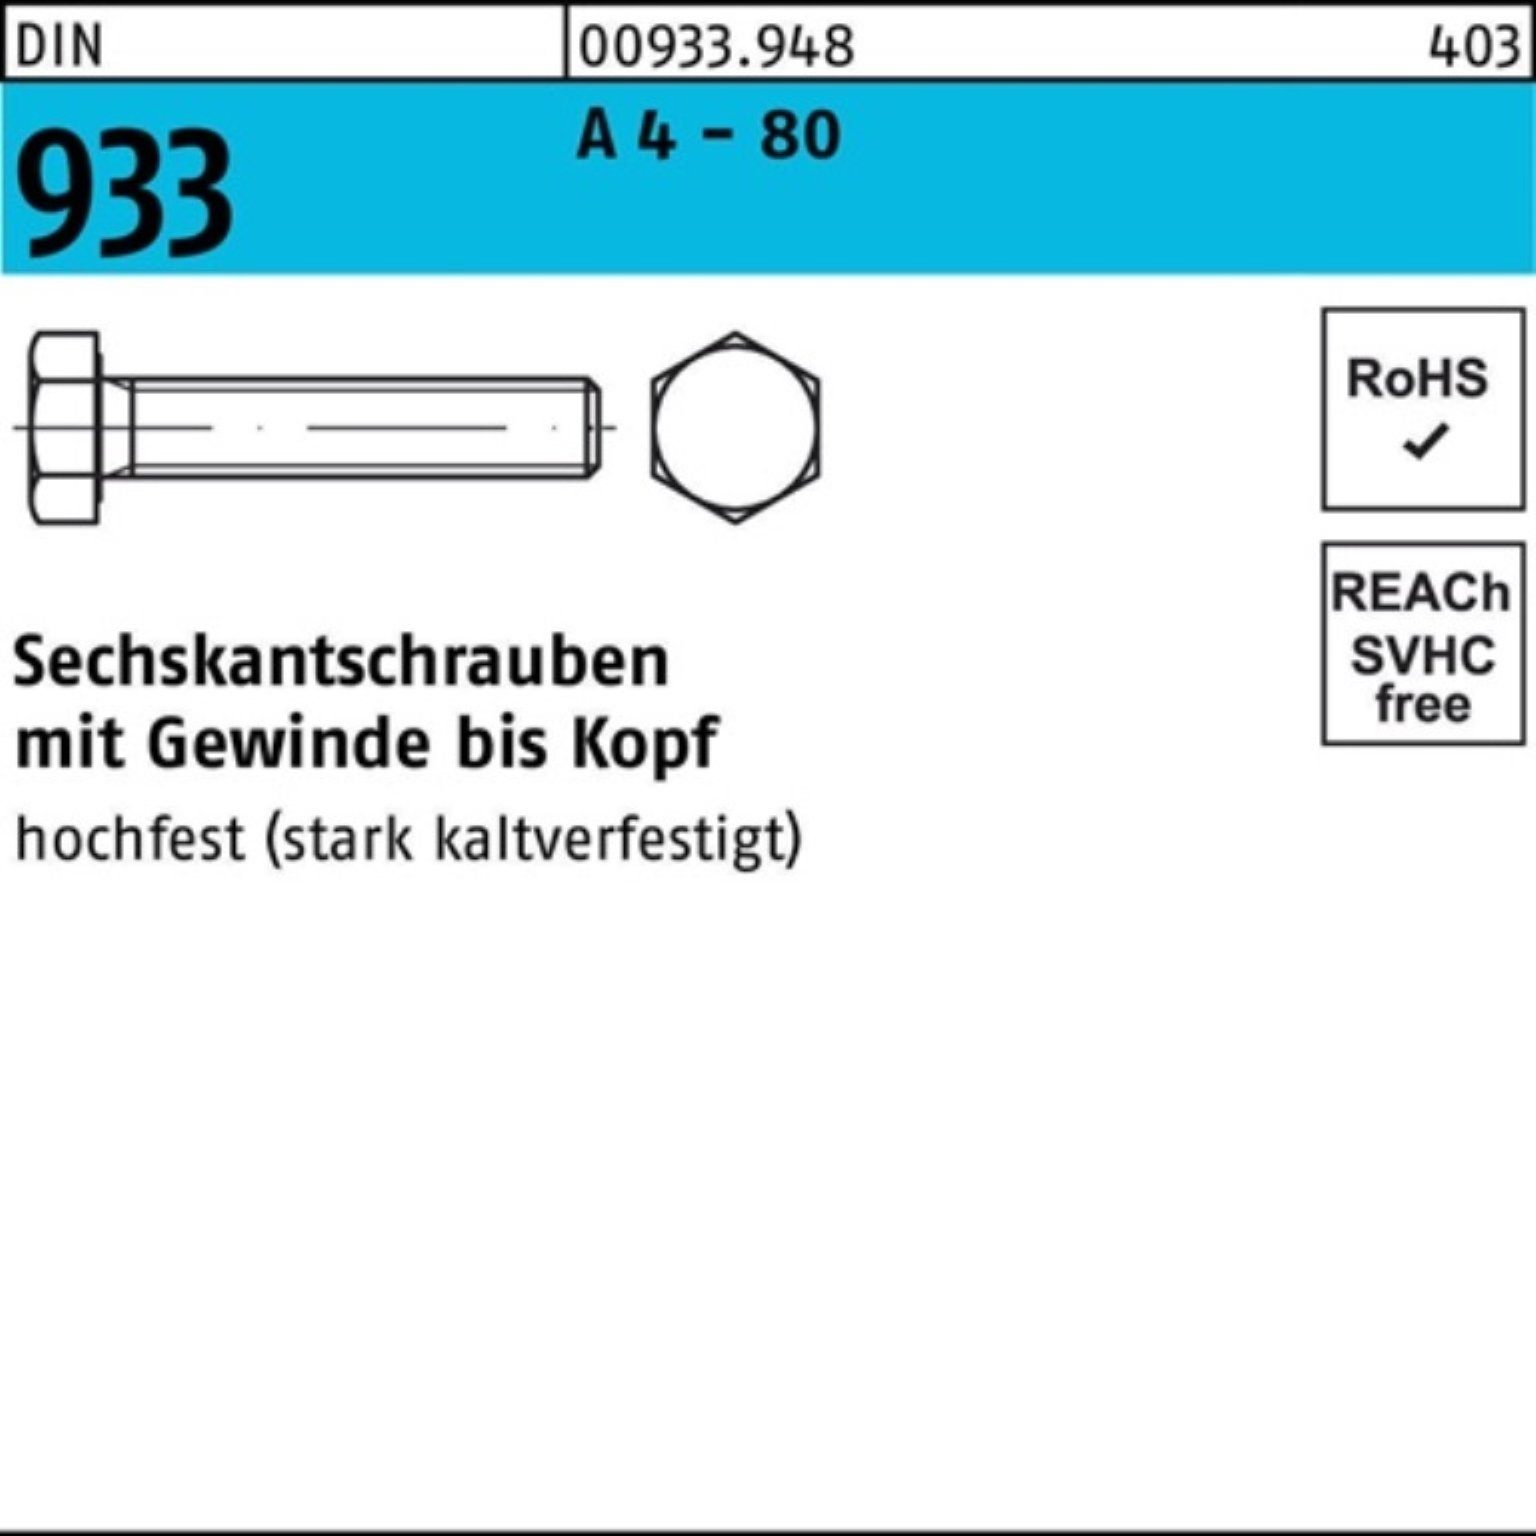 Reyher Sechskantschraube 100er Pack Sechskantschraube DIN 933 VG M10x 35 A 4 - 80 100 Stück DI